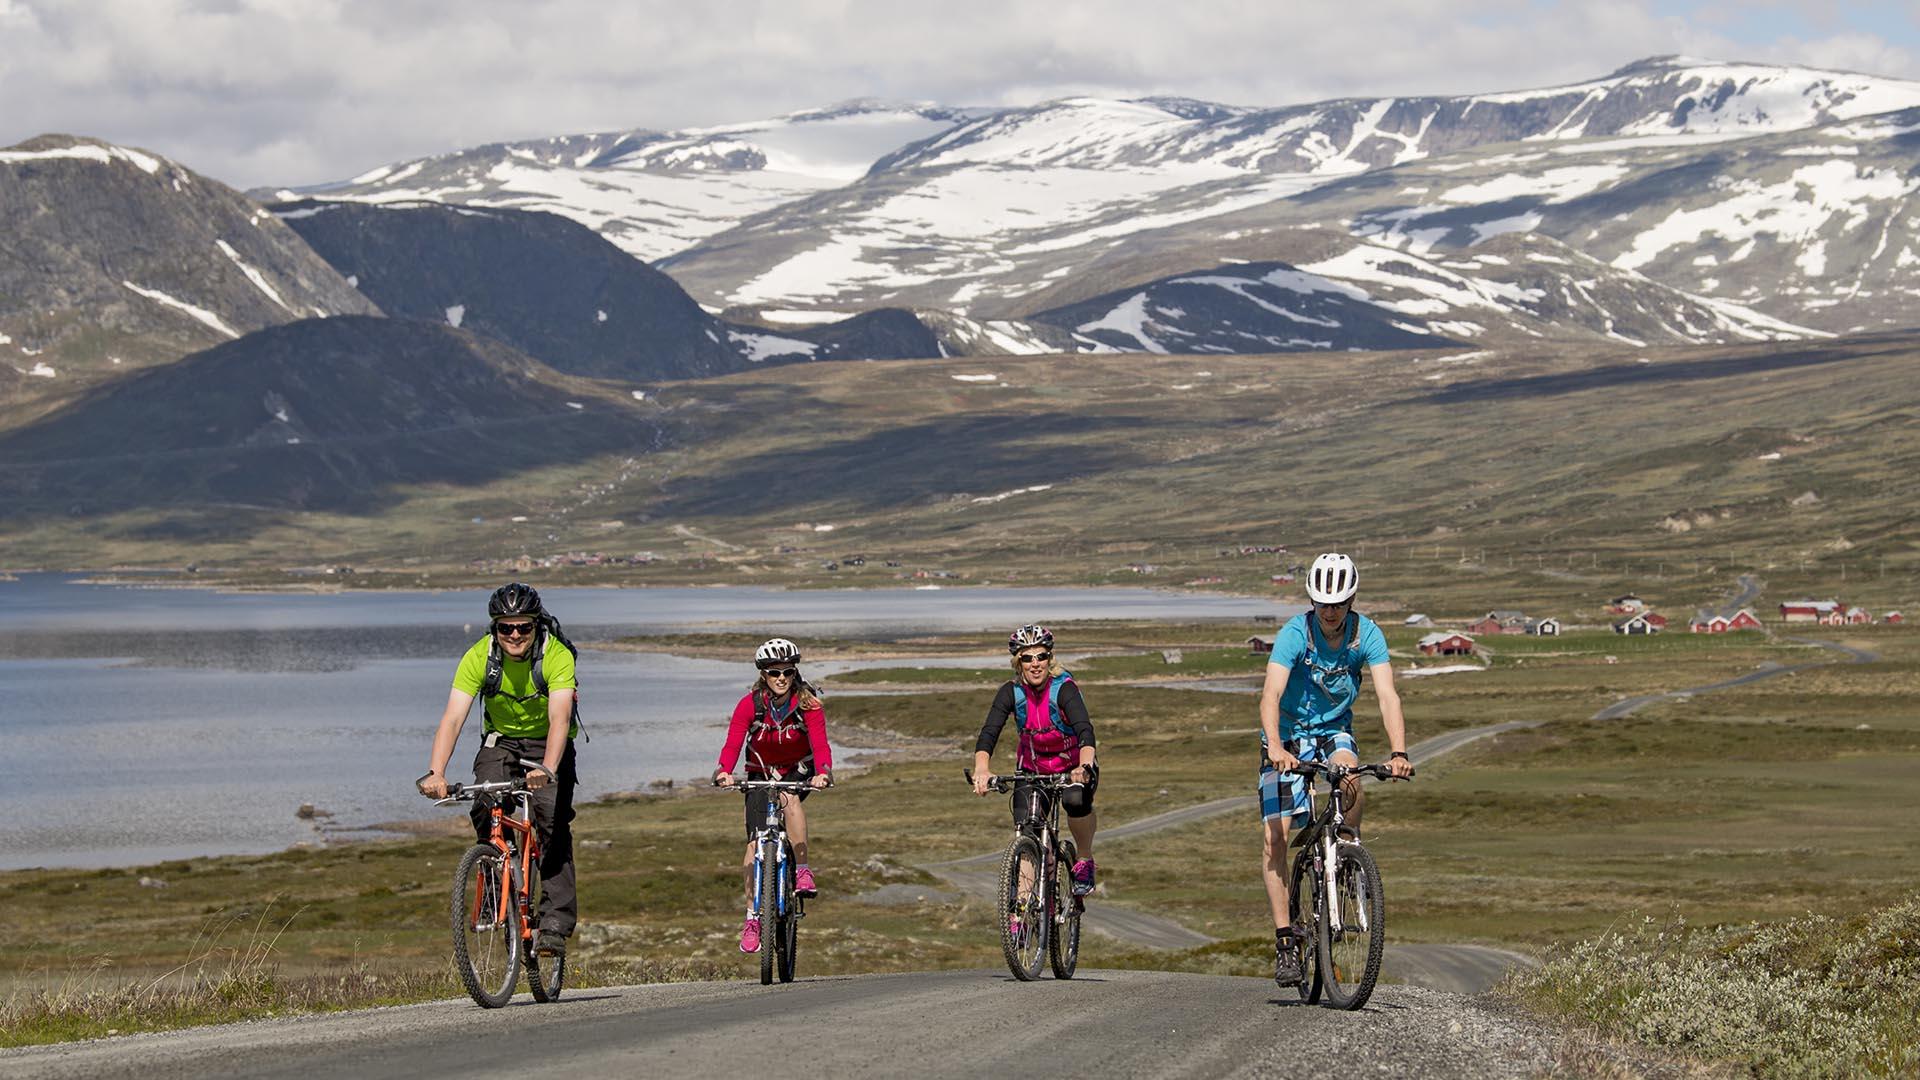 Fire syklister i fargerike sykkelklær sykler imot fotografen på en stølsvei i høyfjellet. Et stort vann og mektige fjell med snø på ses i bakgrunnen.